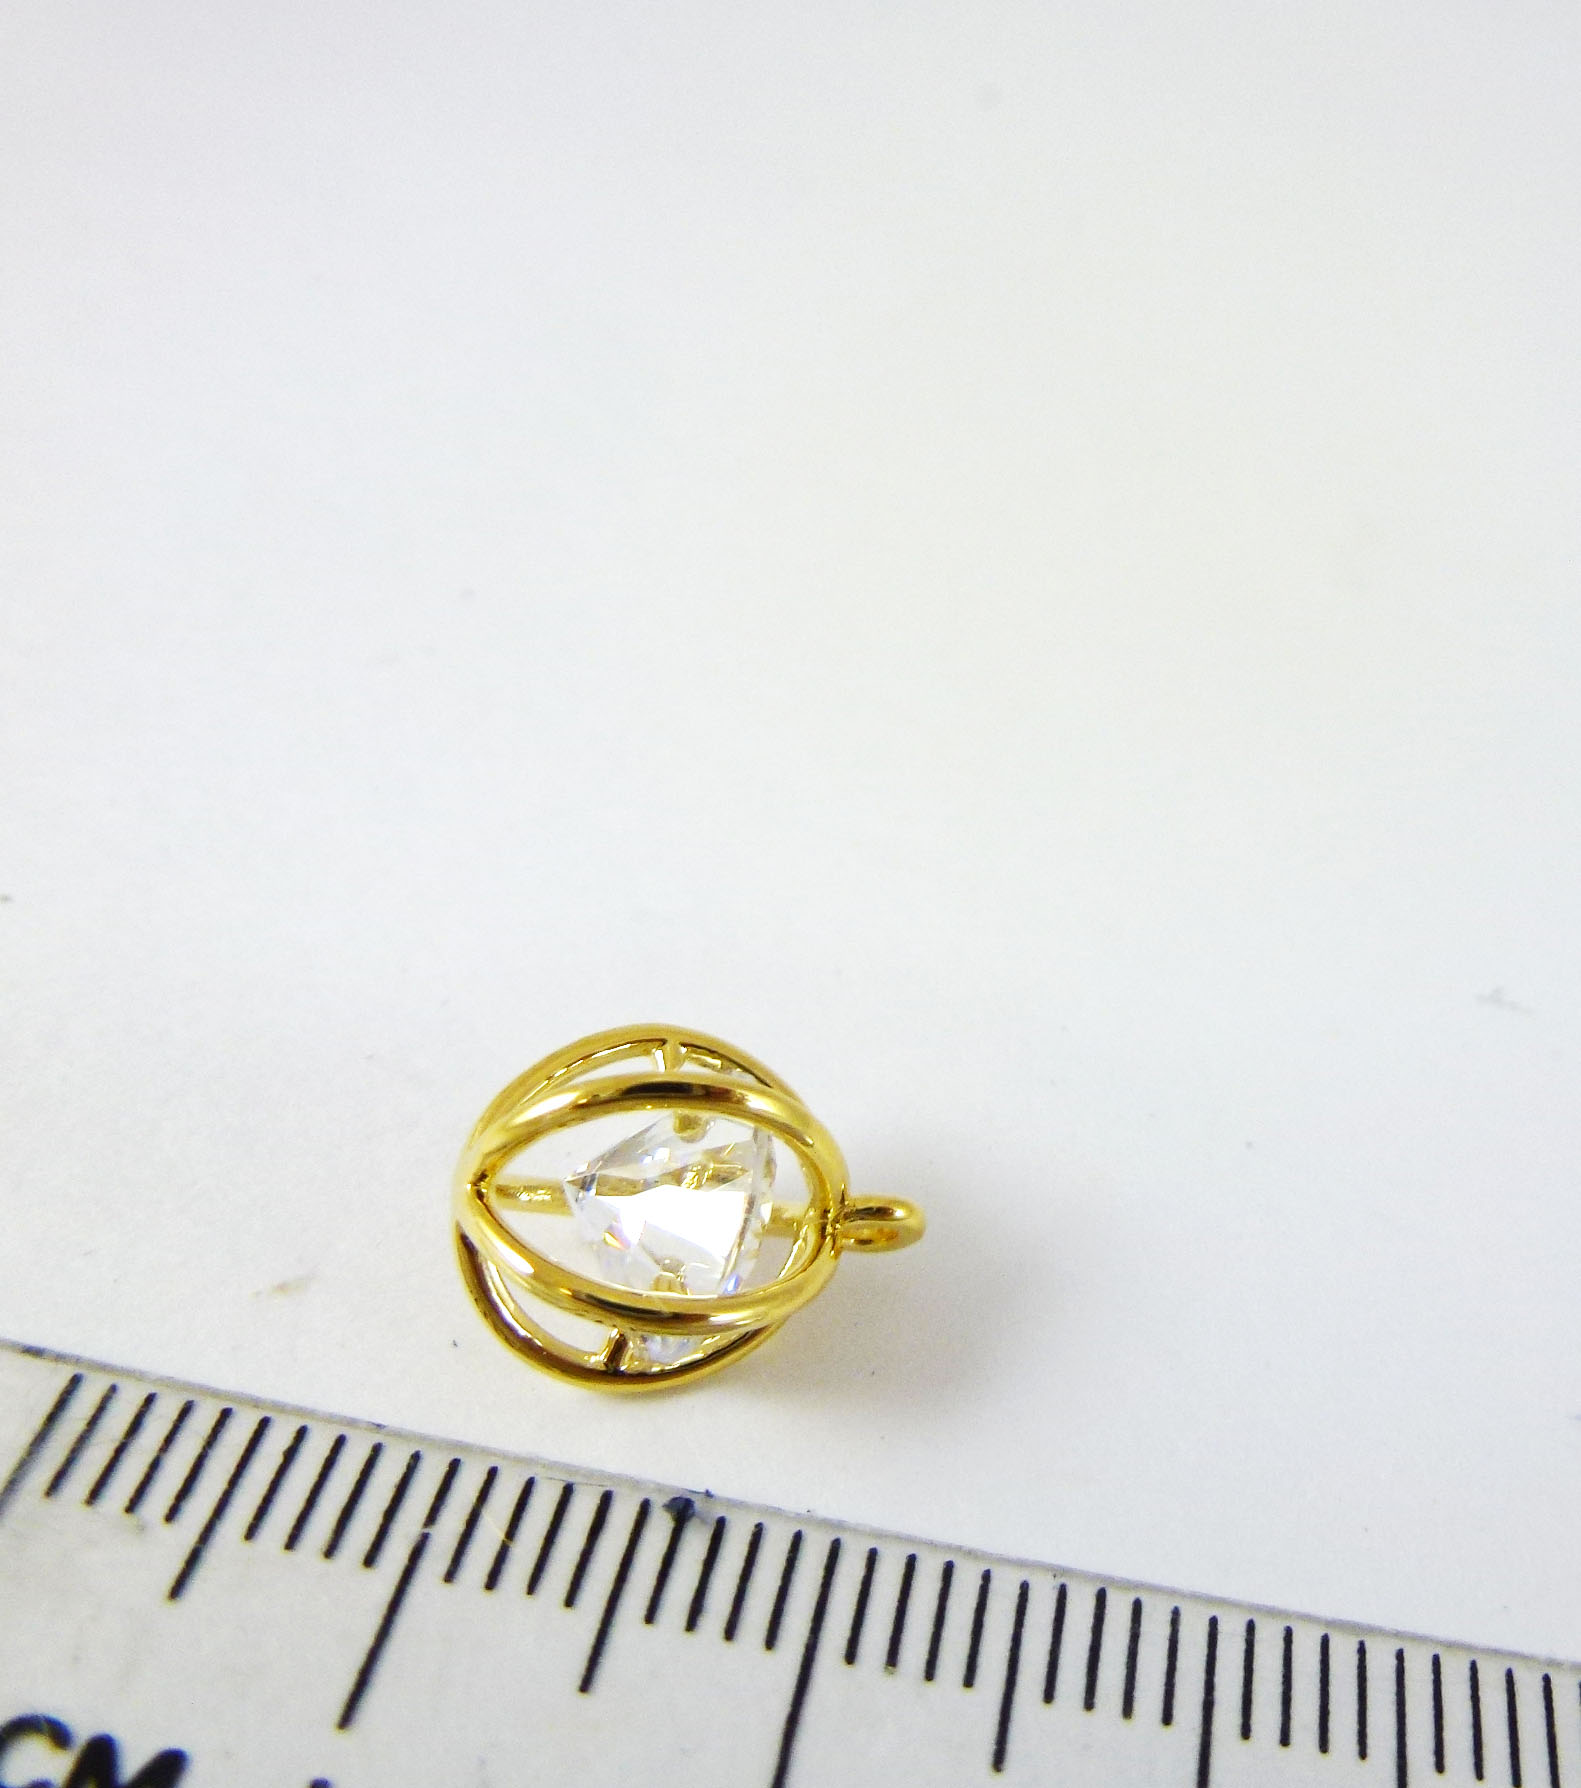 10mm銅鍍金單孔線球包鑽